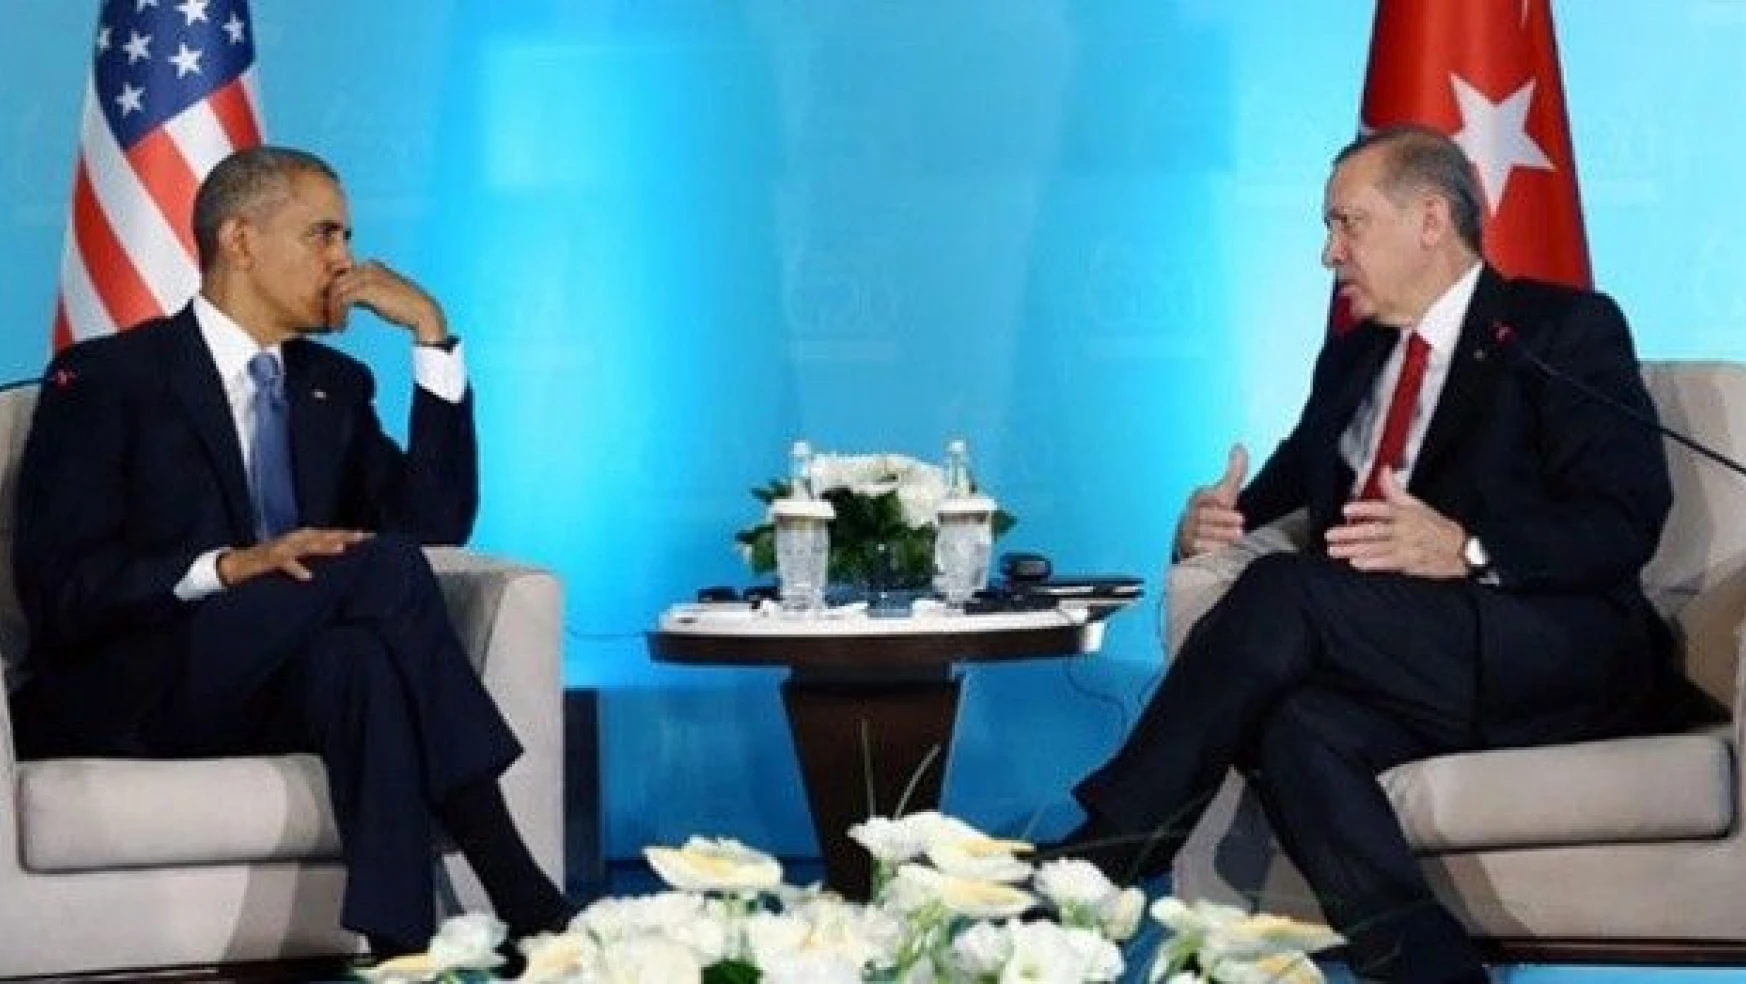 Erdoğan-Obama görüşmesinde neler konuşuldu?